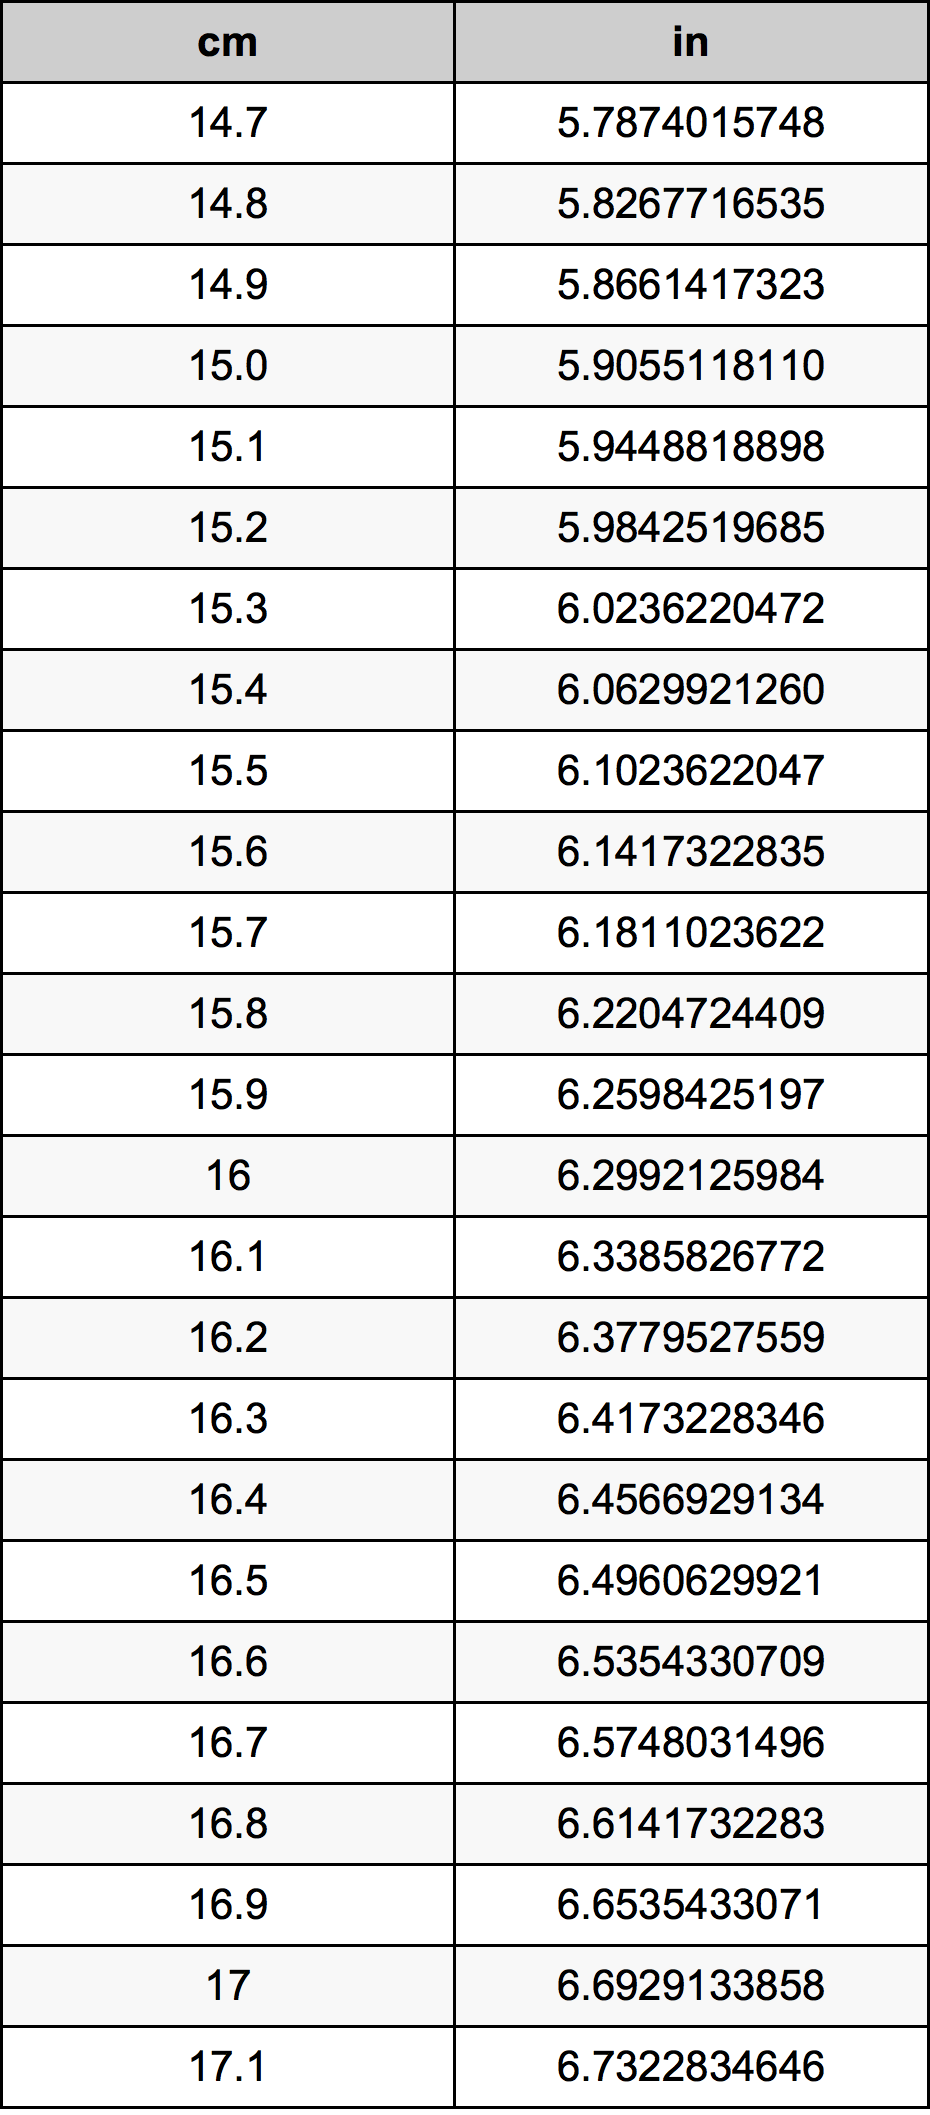 15.9 Centiméter átszámítási táblázat